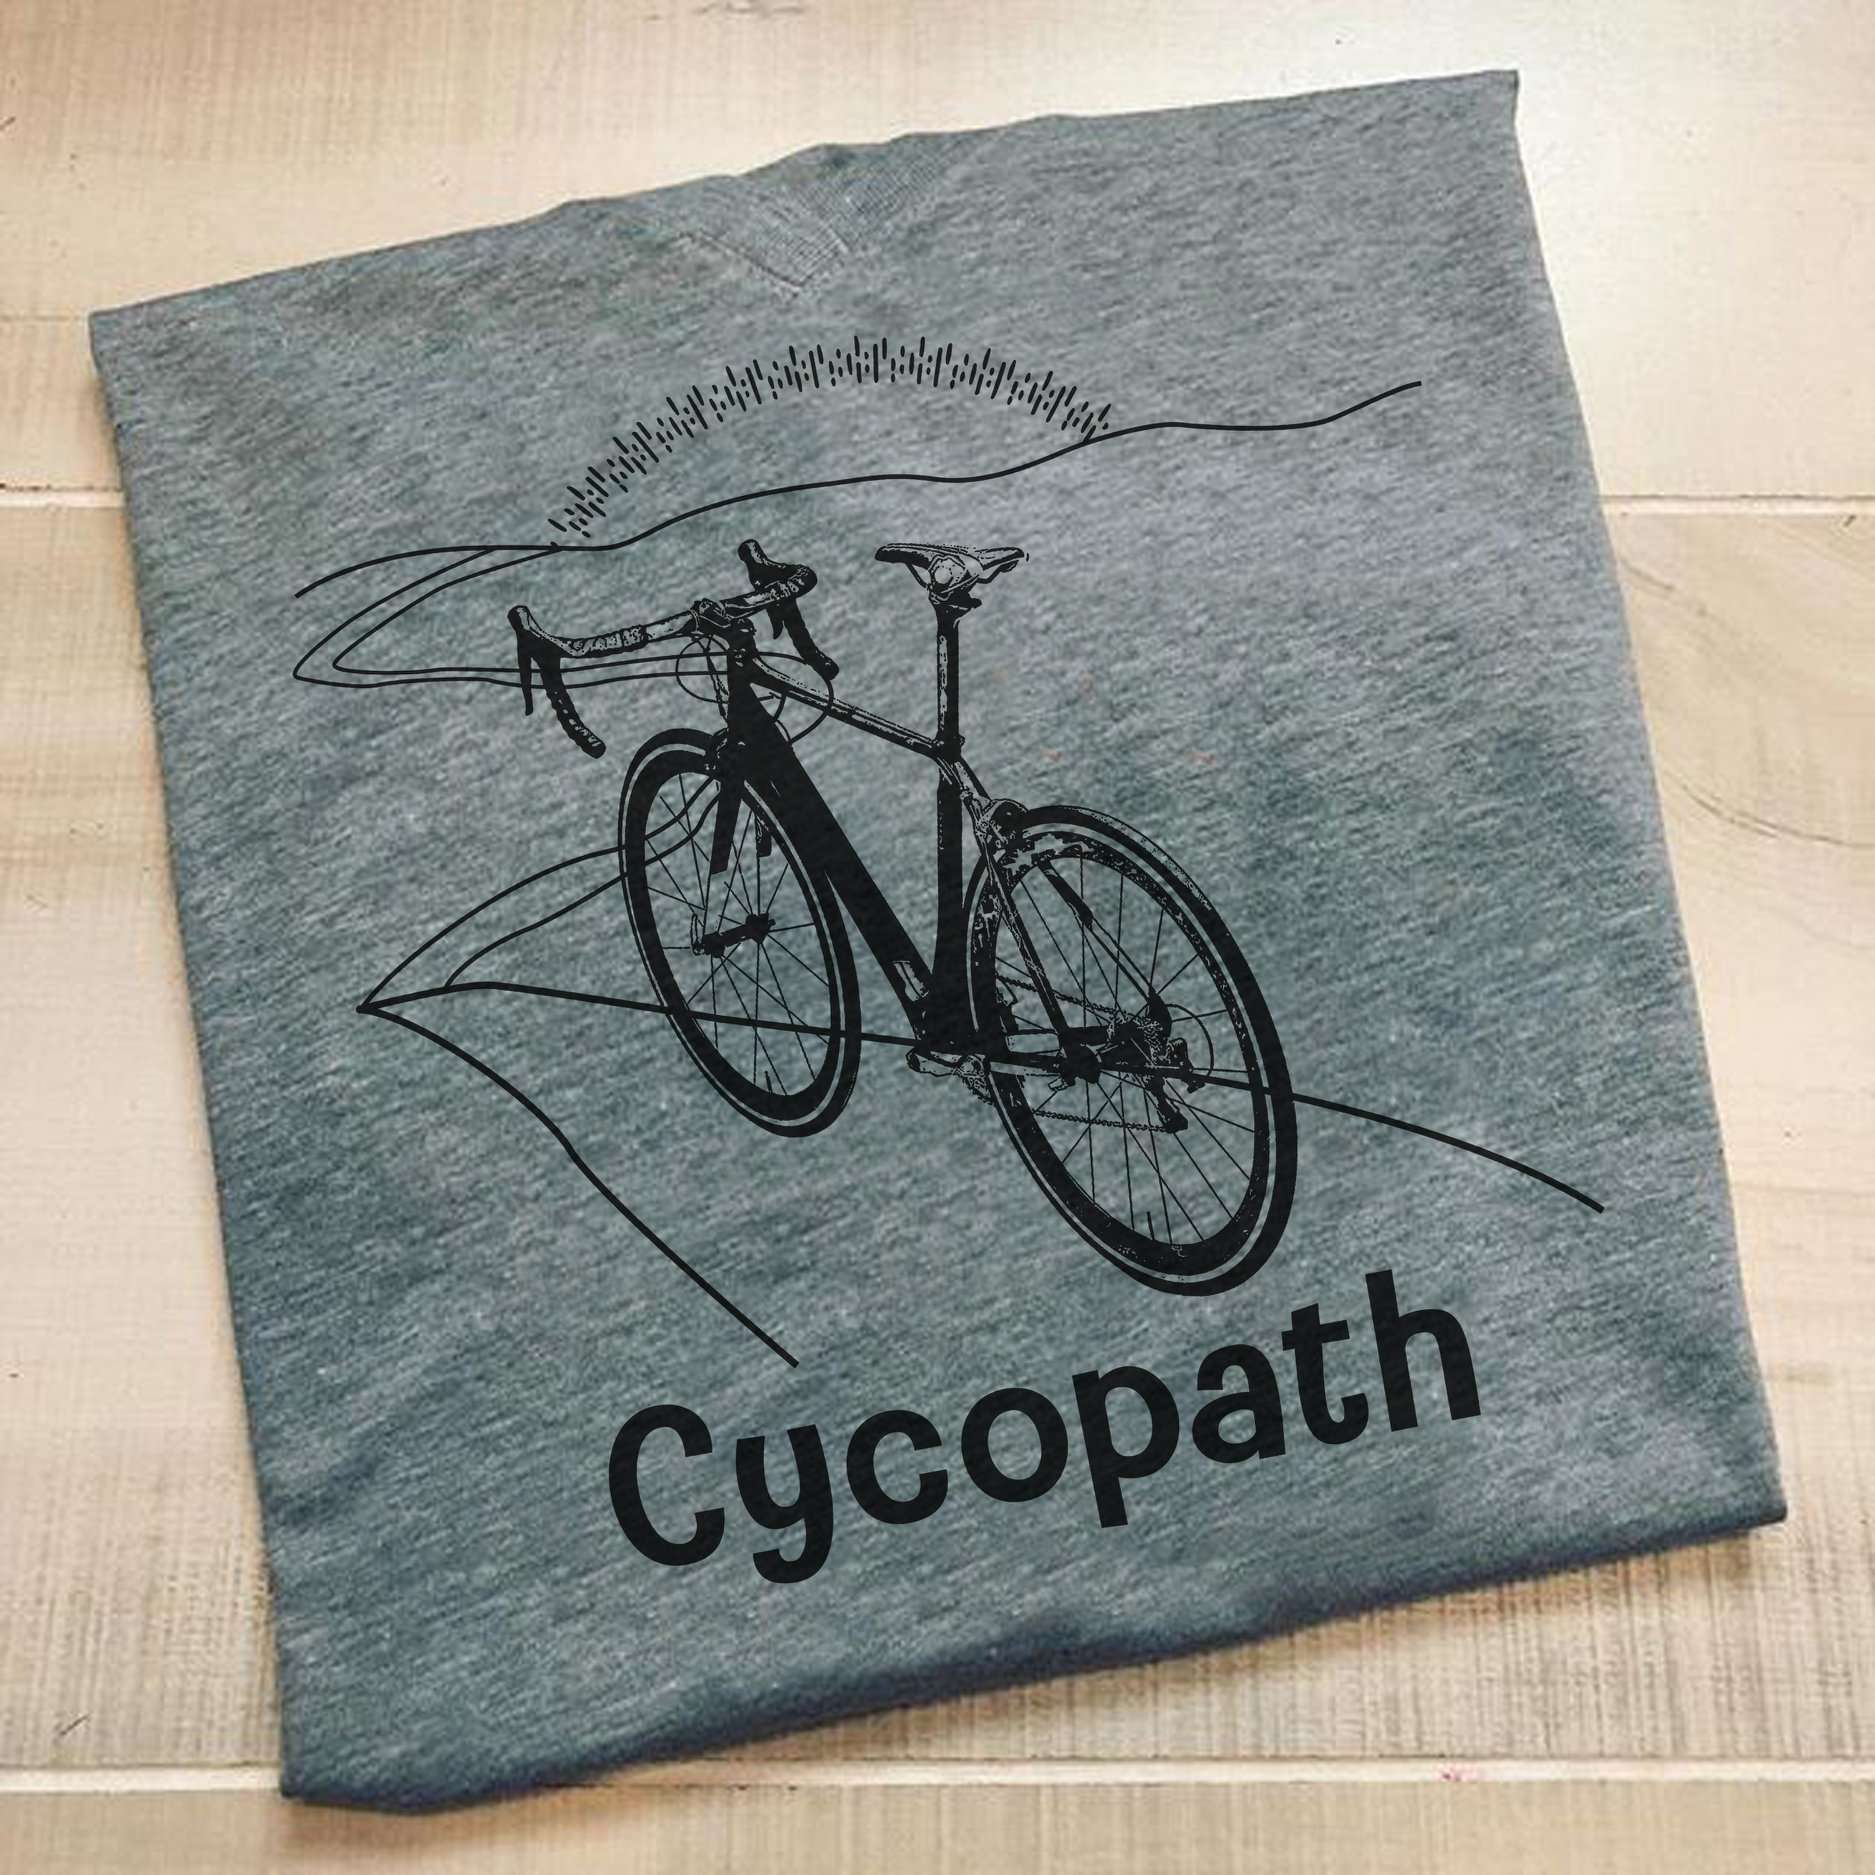 Cycopath - Bike on road, life behind bar